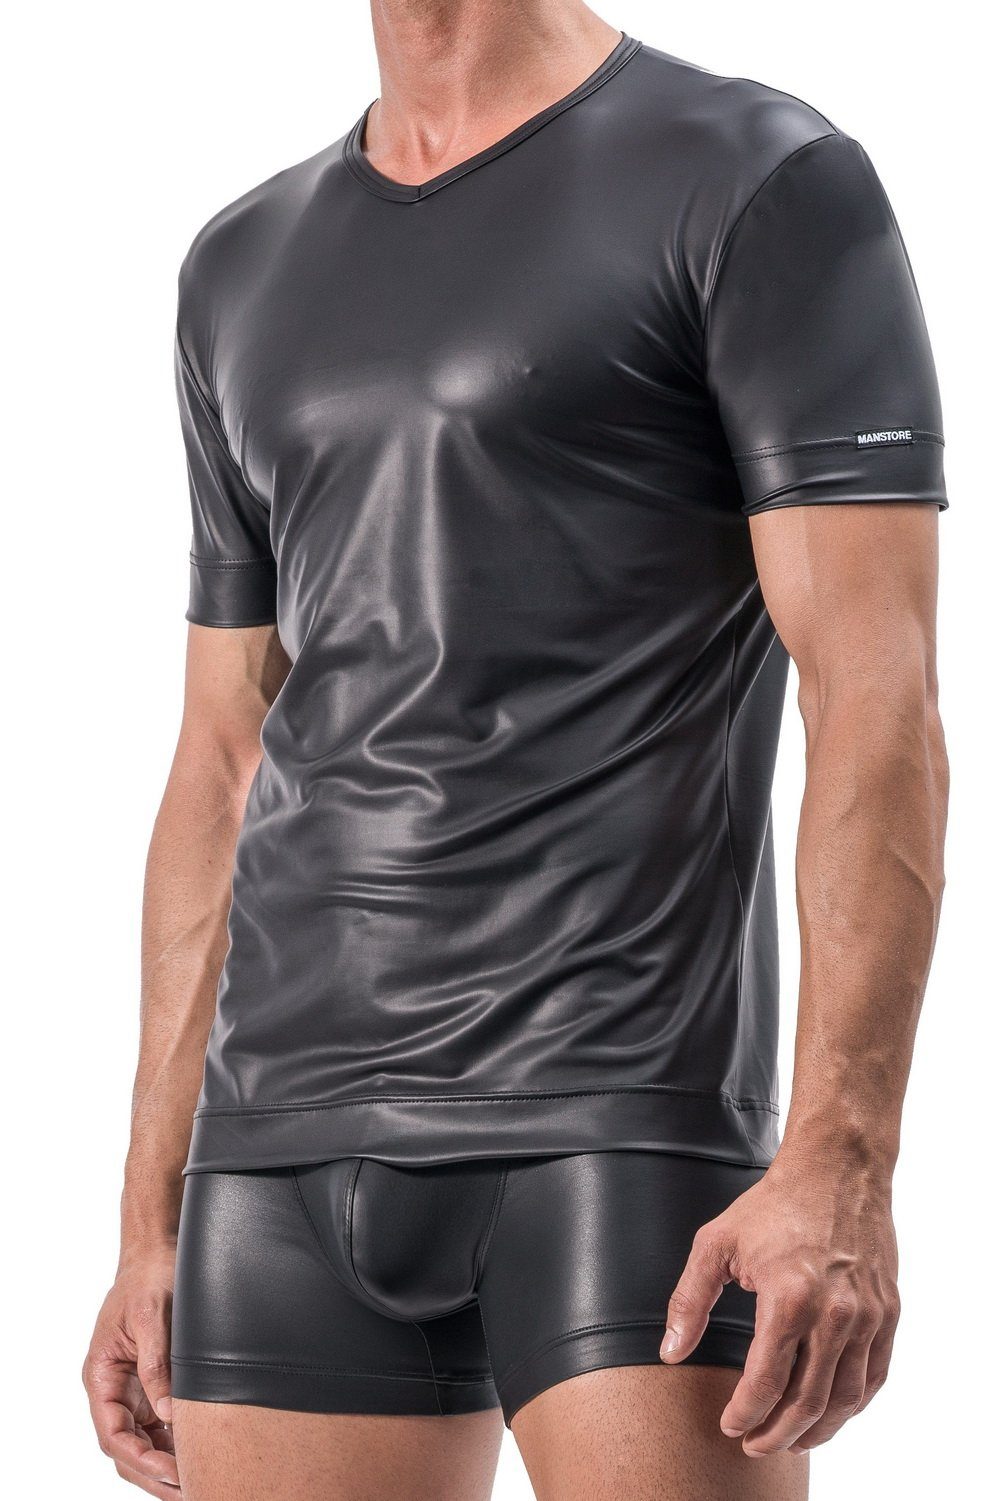 MANSTORE V-Shirt M510 V-Ausschnitt Shirt Clubwear mit Latexfeeling atmungsaktiv L